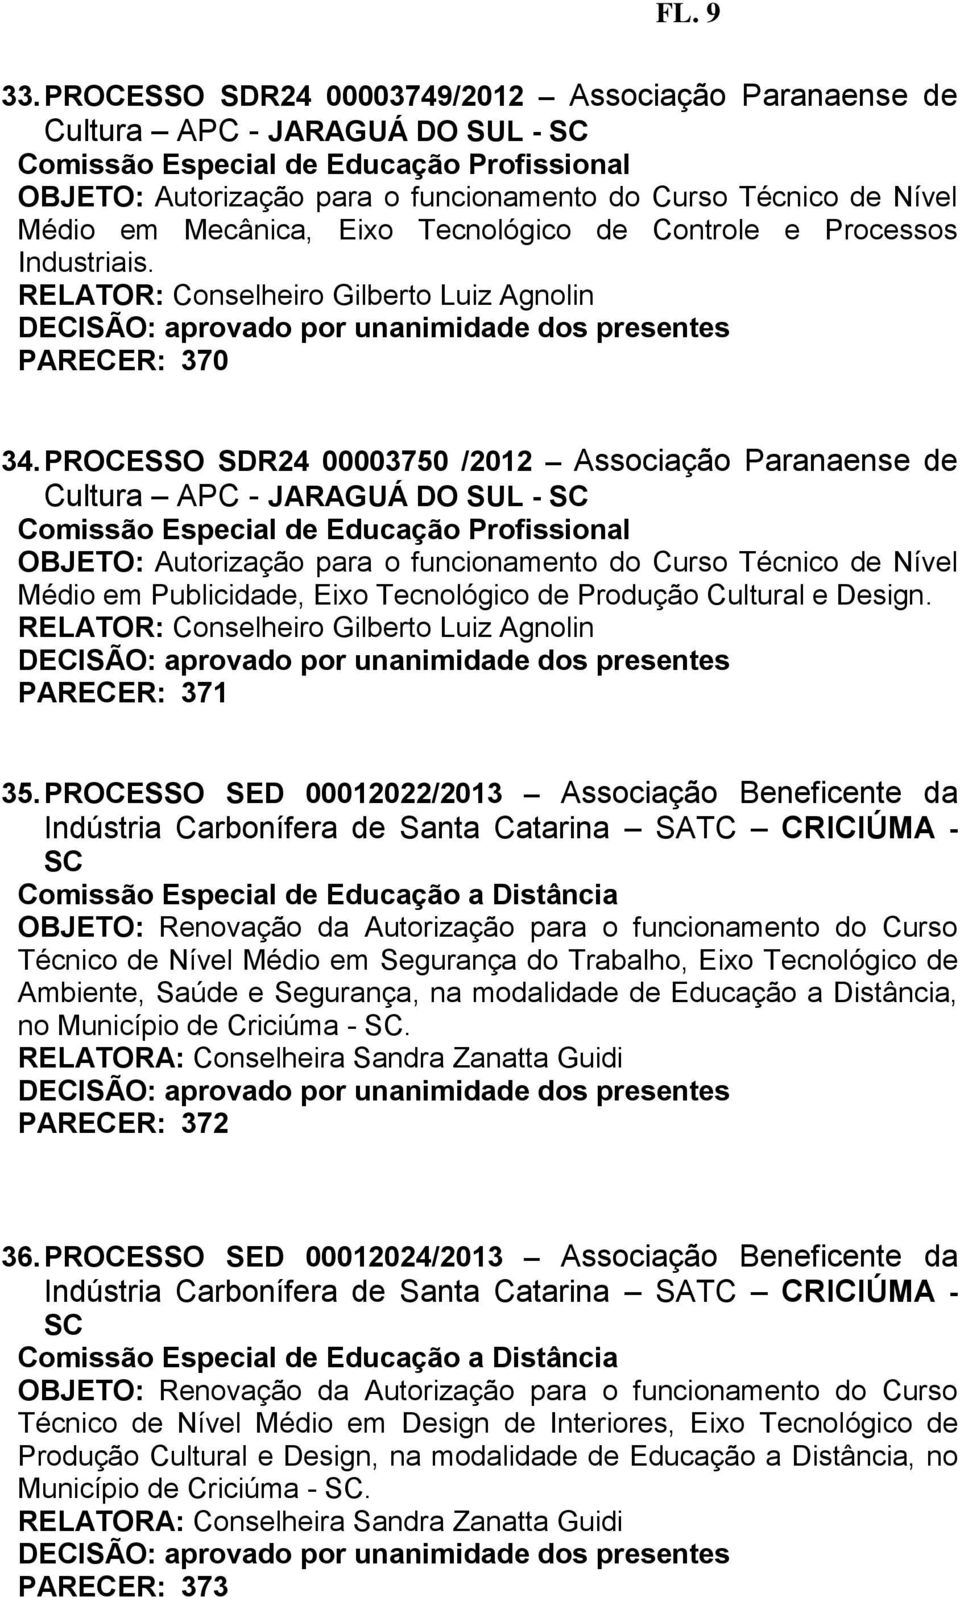 PROCESSO SED 00012022/2013 Associação Beneficente da Indústria Carbonífera de Santa Catarina SATC CRICIÚMA - SC Comissão Especial de Educação a Distância OBJETO: Renovação da Autorização para o